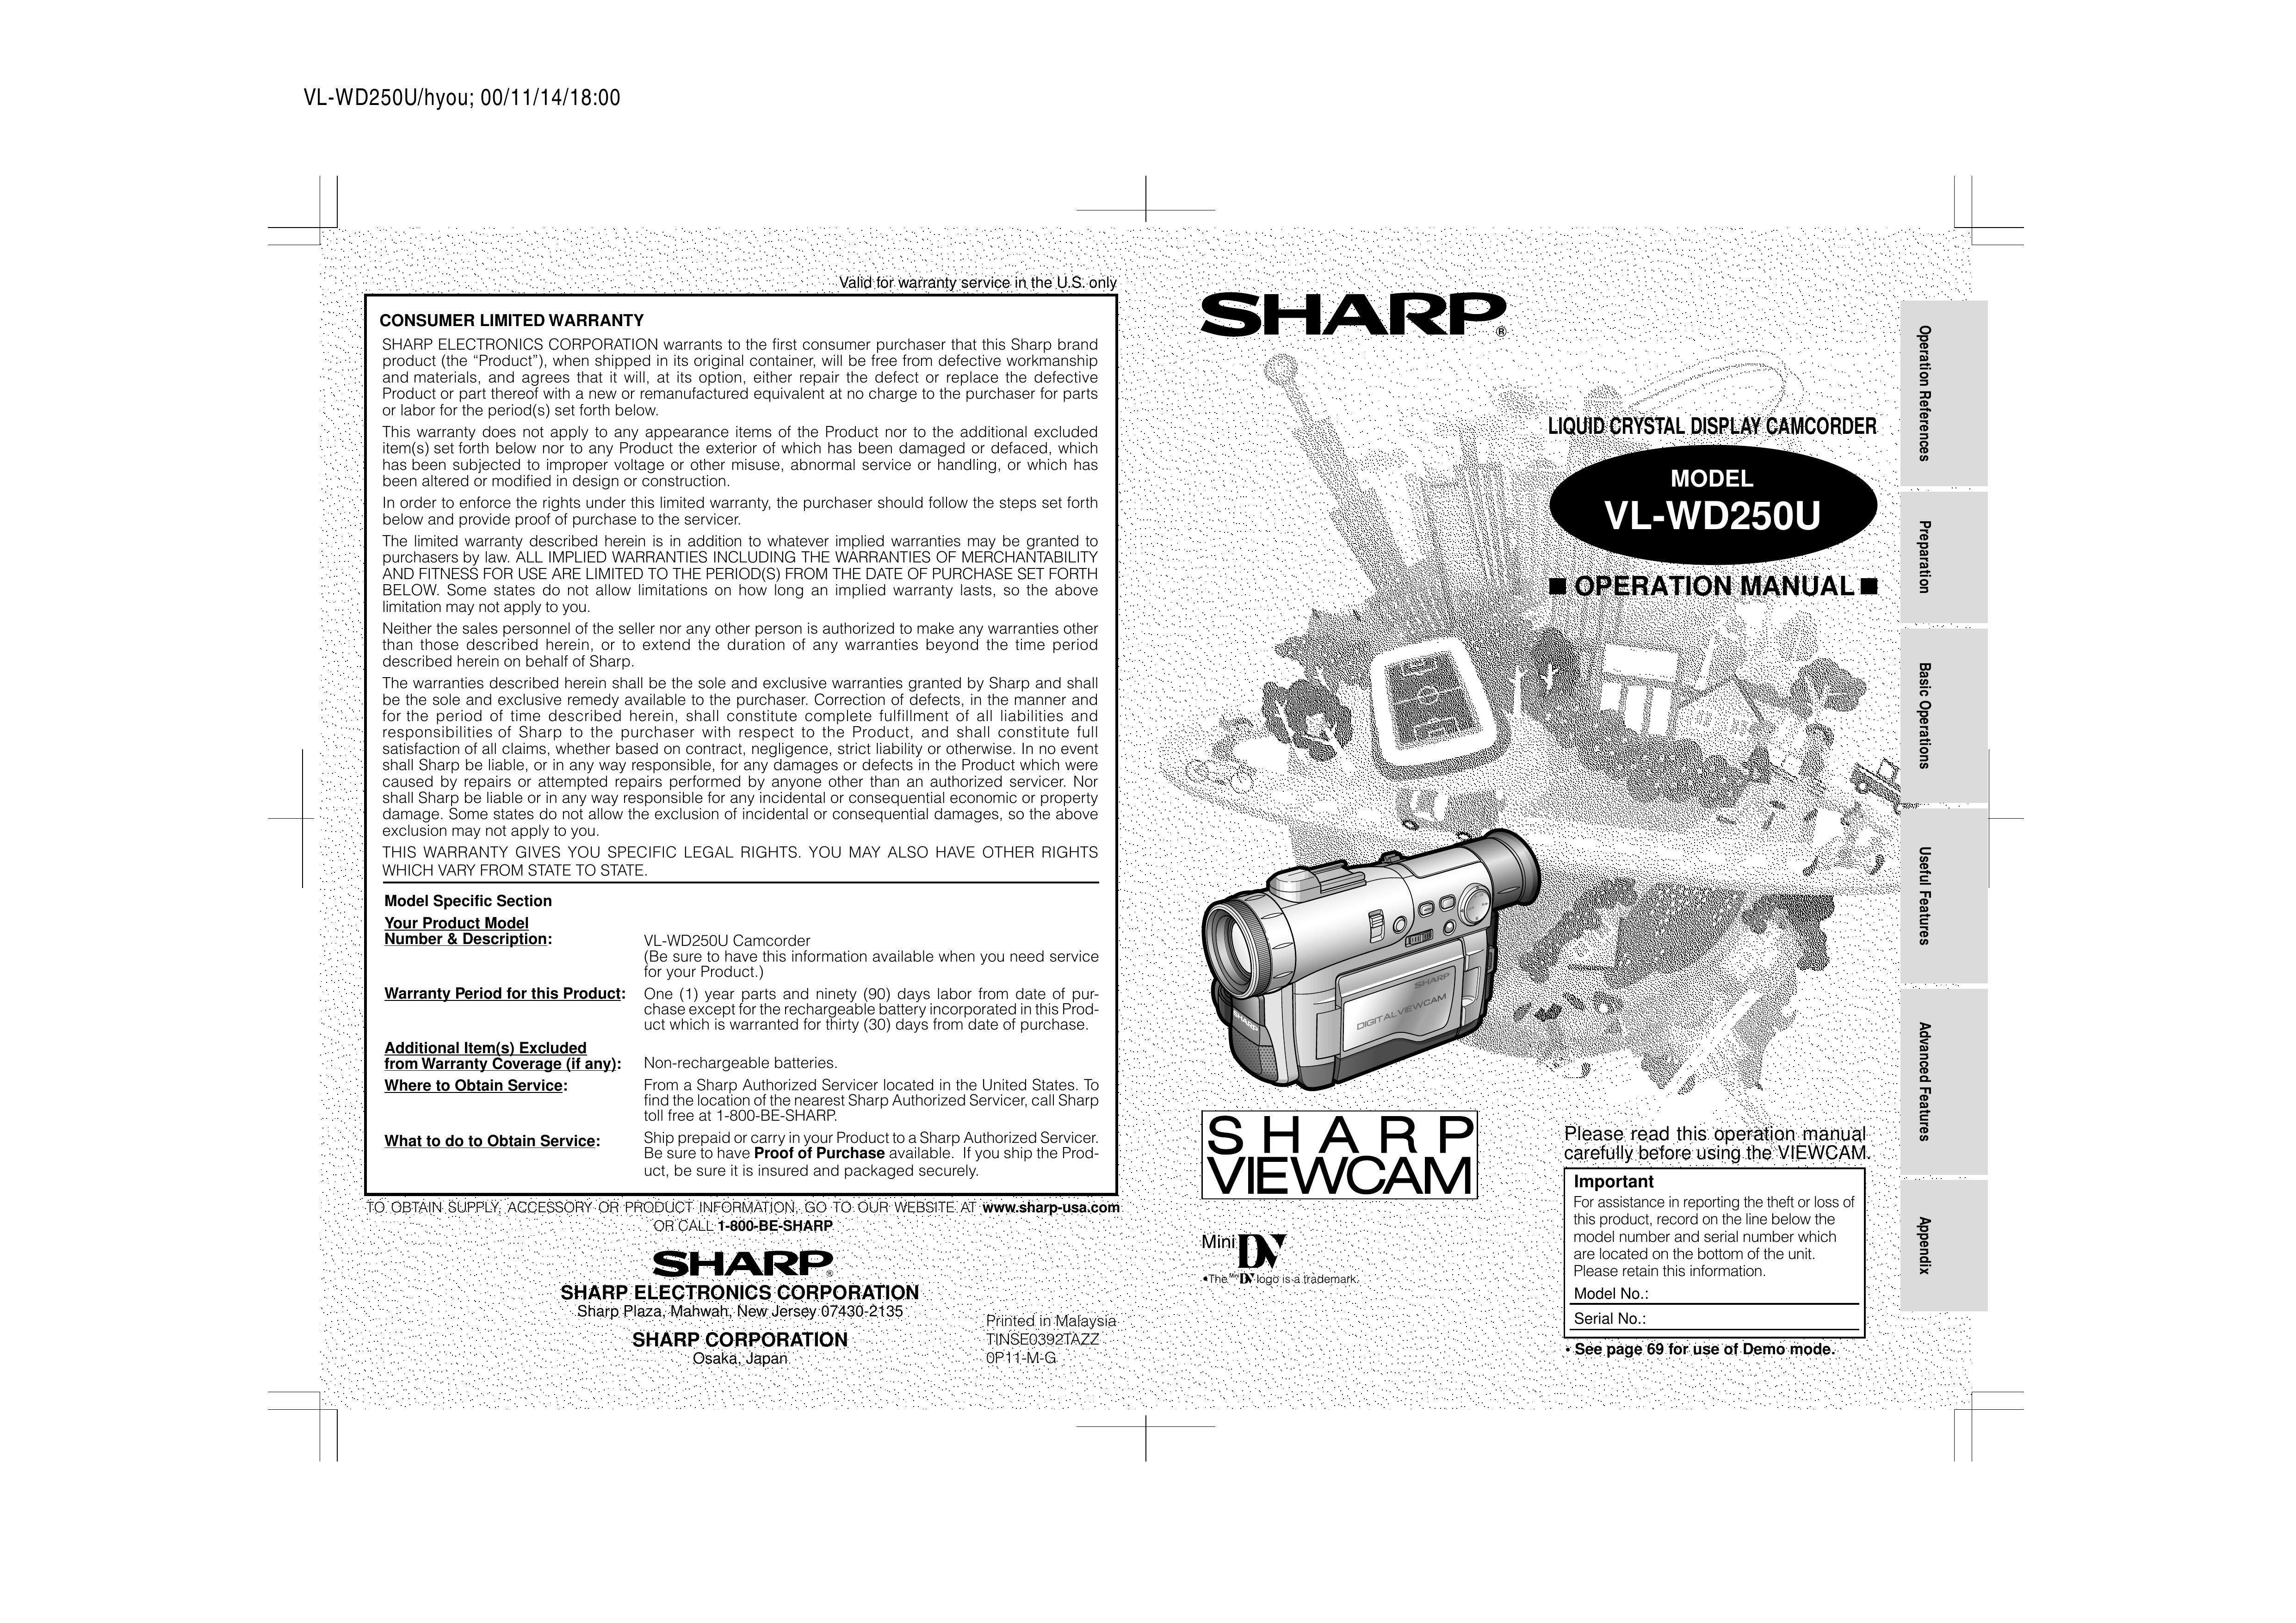 Sharp VL-WD250U Camcorder User Manual